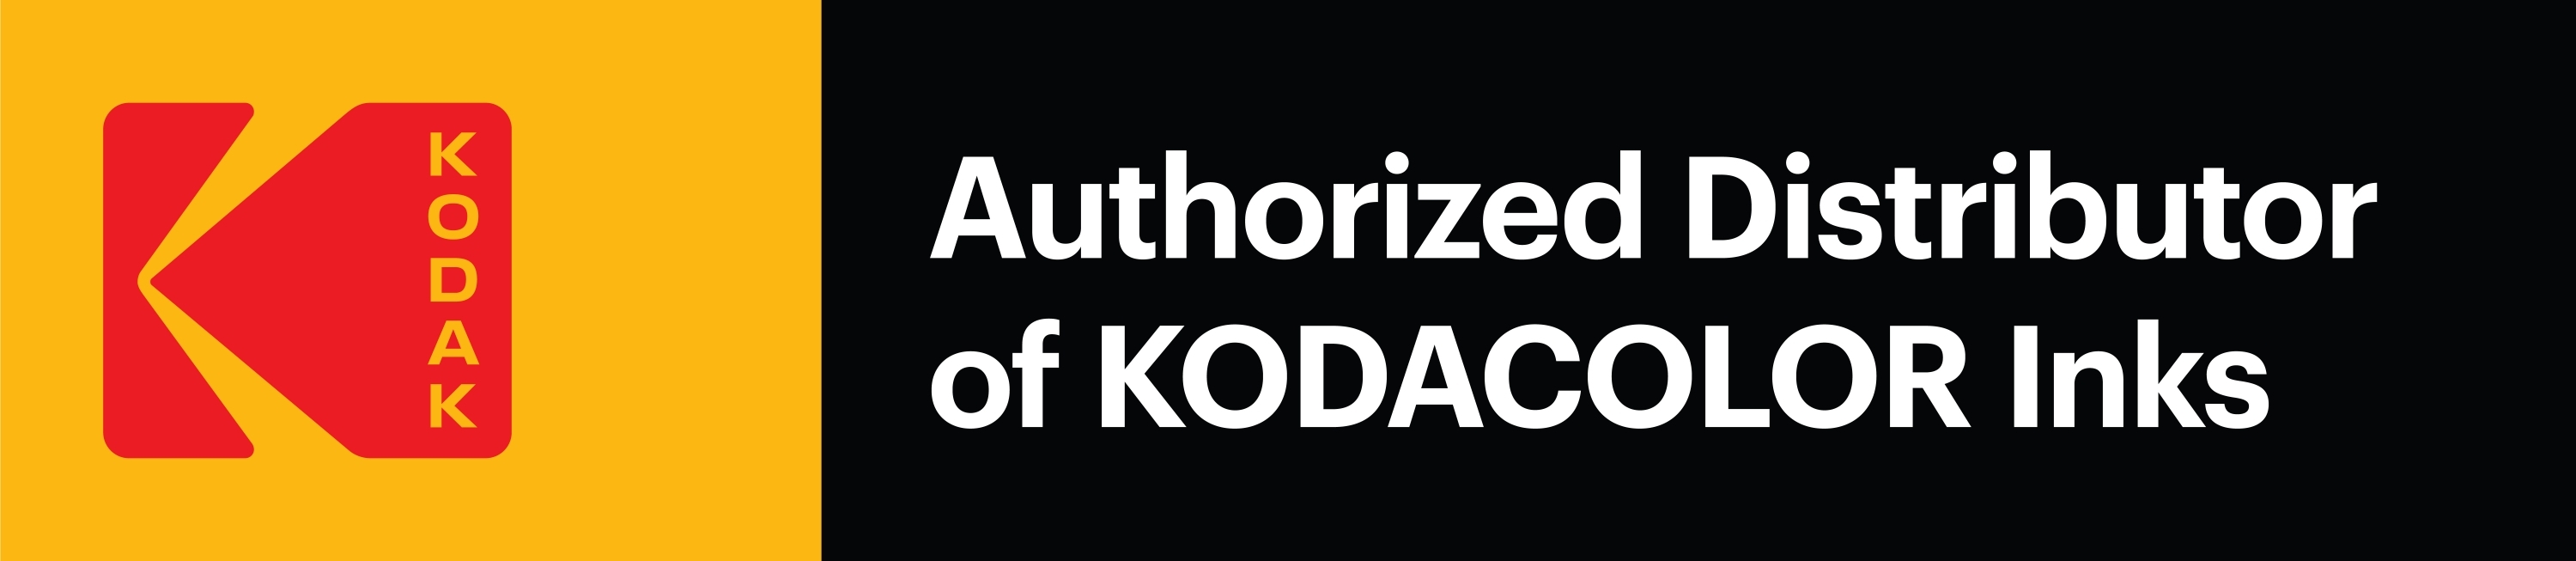 Authorized Distributor of KODACOLOR Inks badge